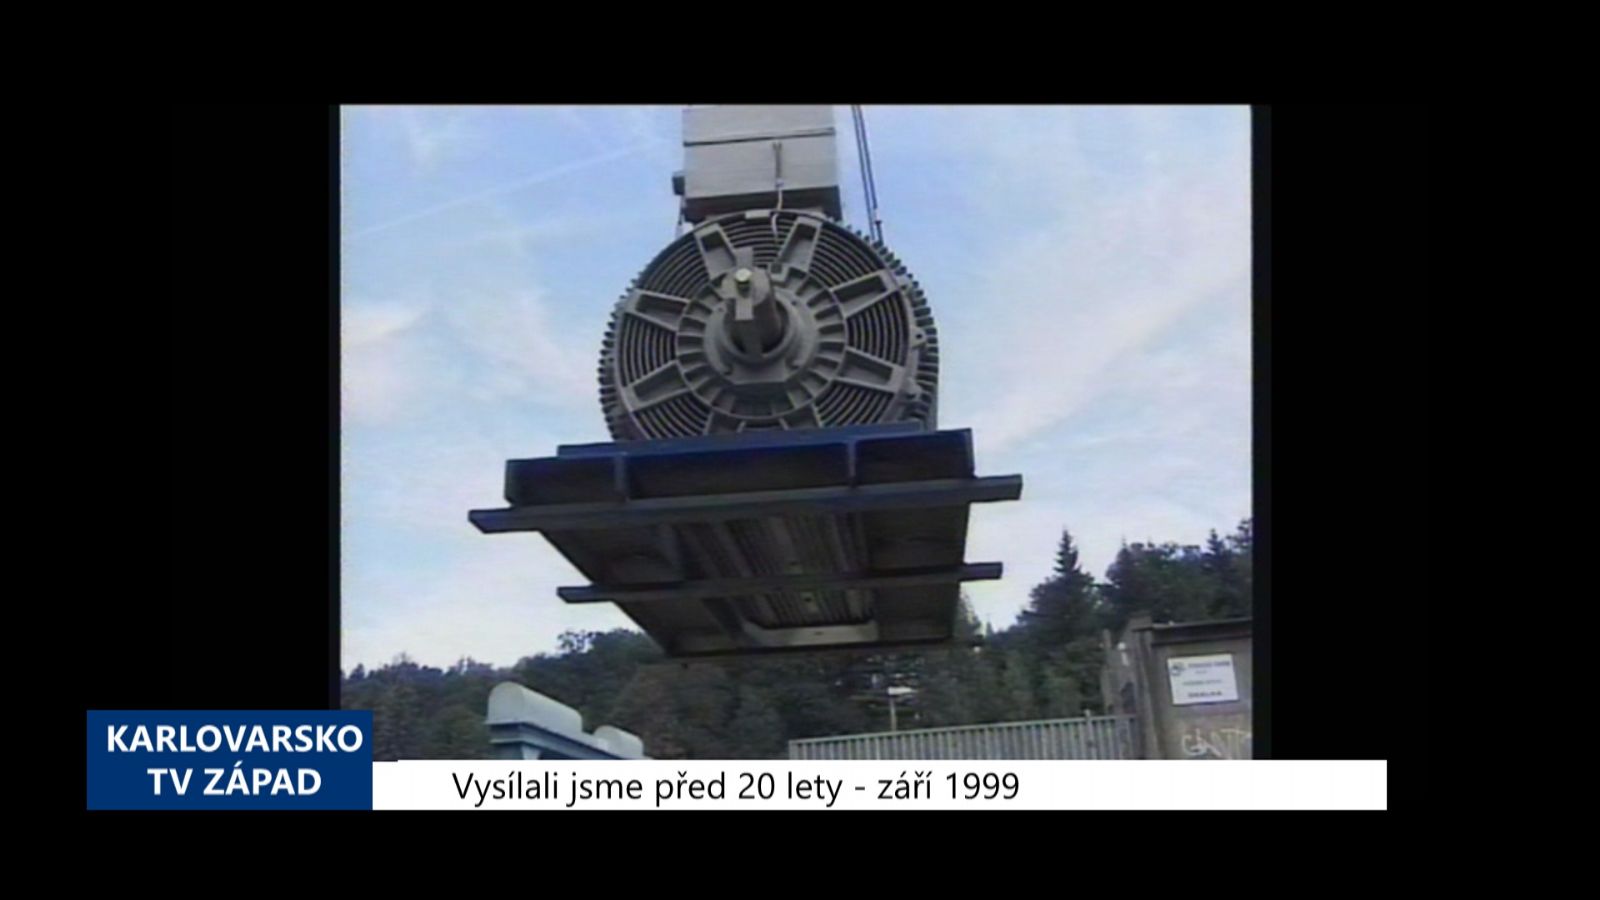 1999 – Cheb: Opravy přehrady Skalka finišují (TV Západ)	